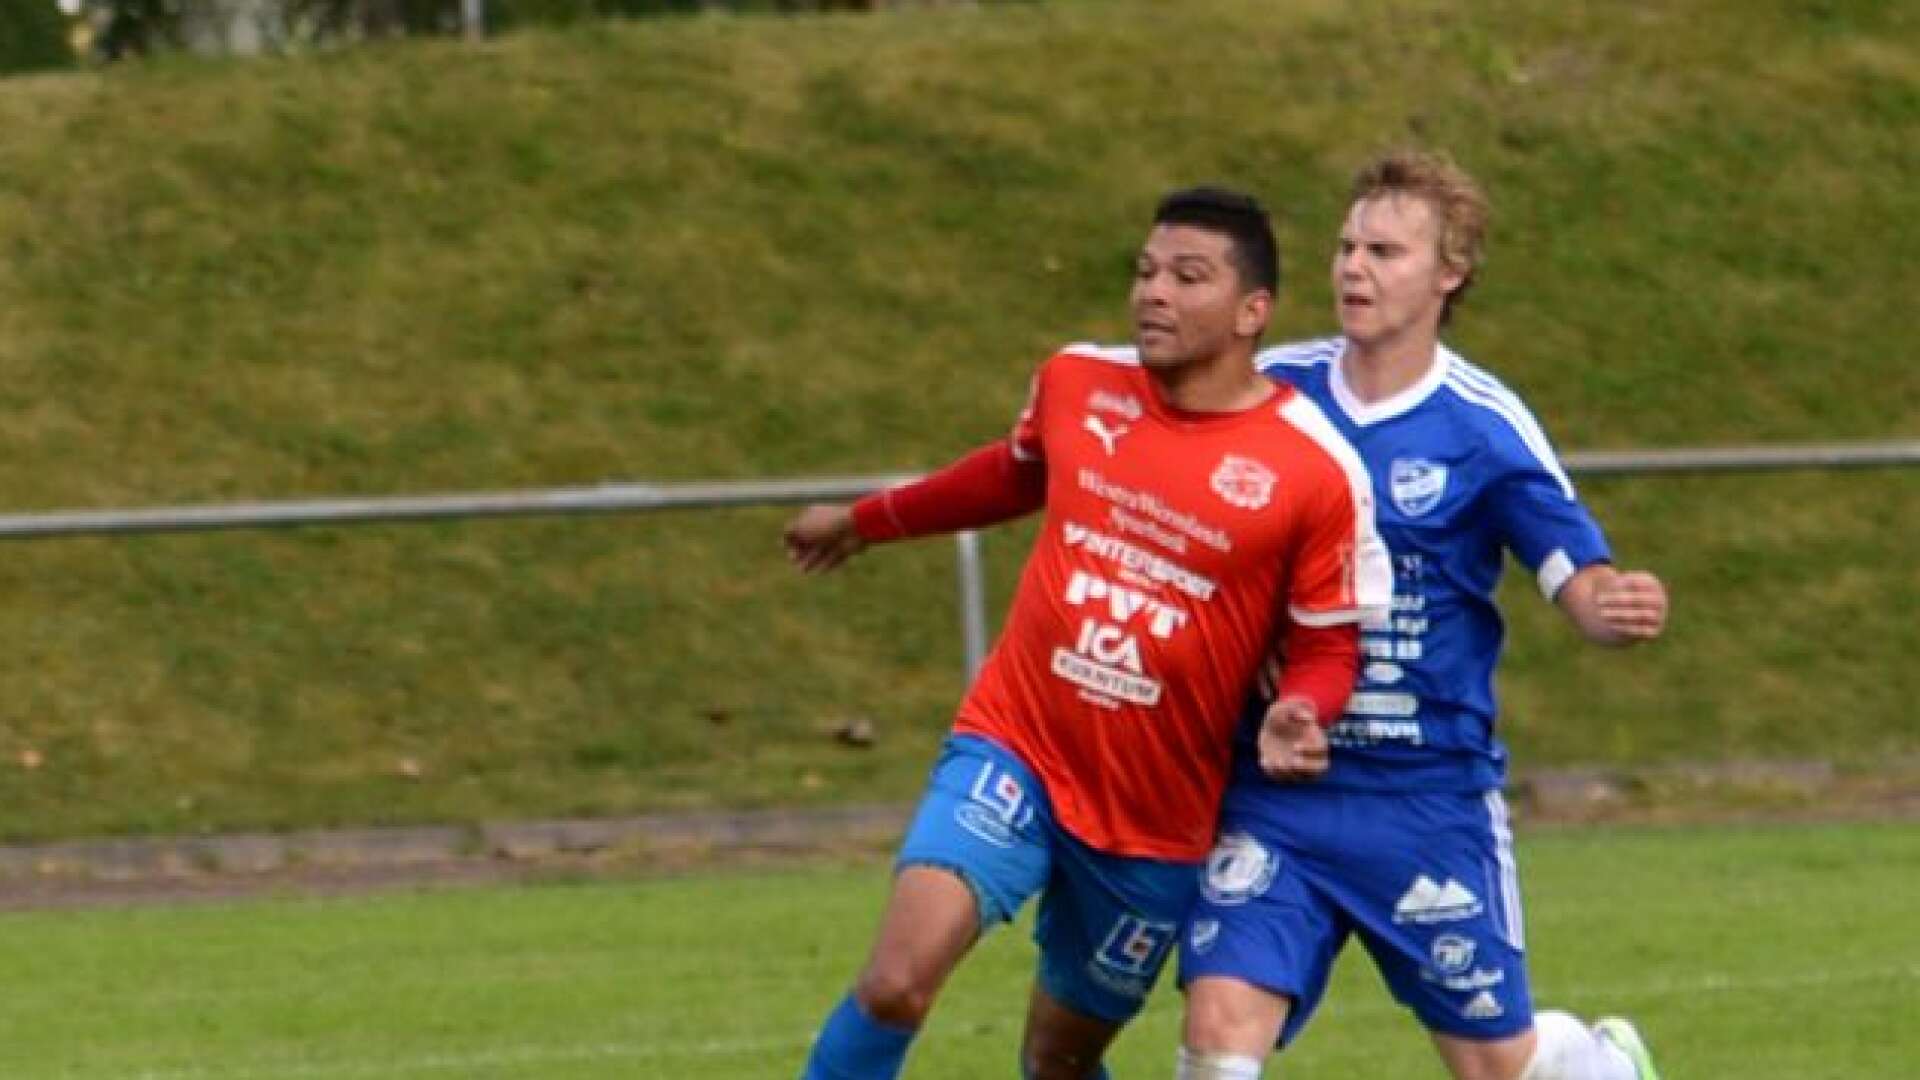 Luis Reiborn och hans lagkompisar i Arvika spelade i helgen seriepremiär i den värmländska futsalserien.